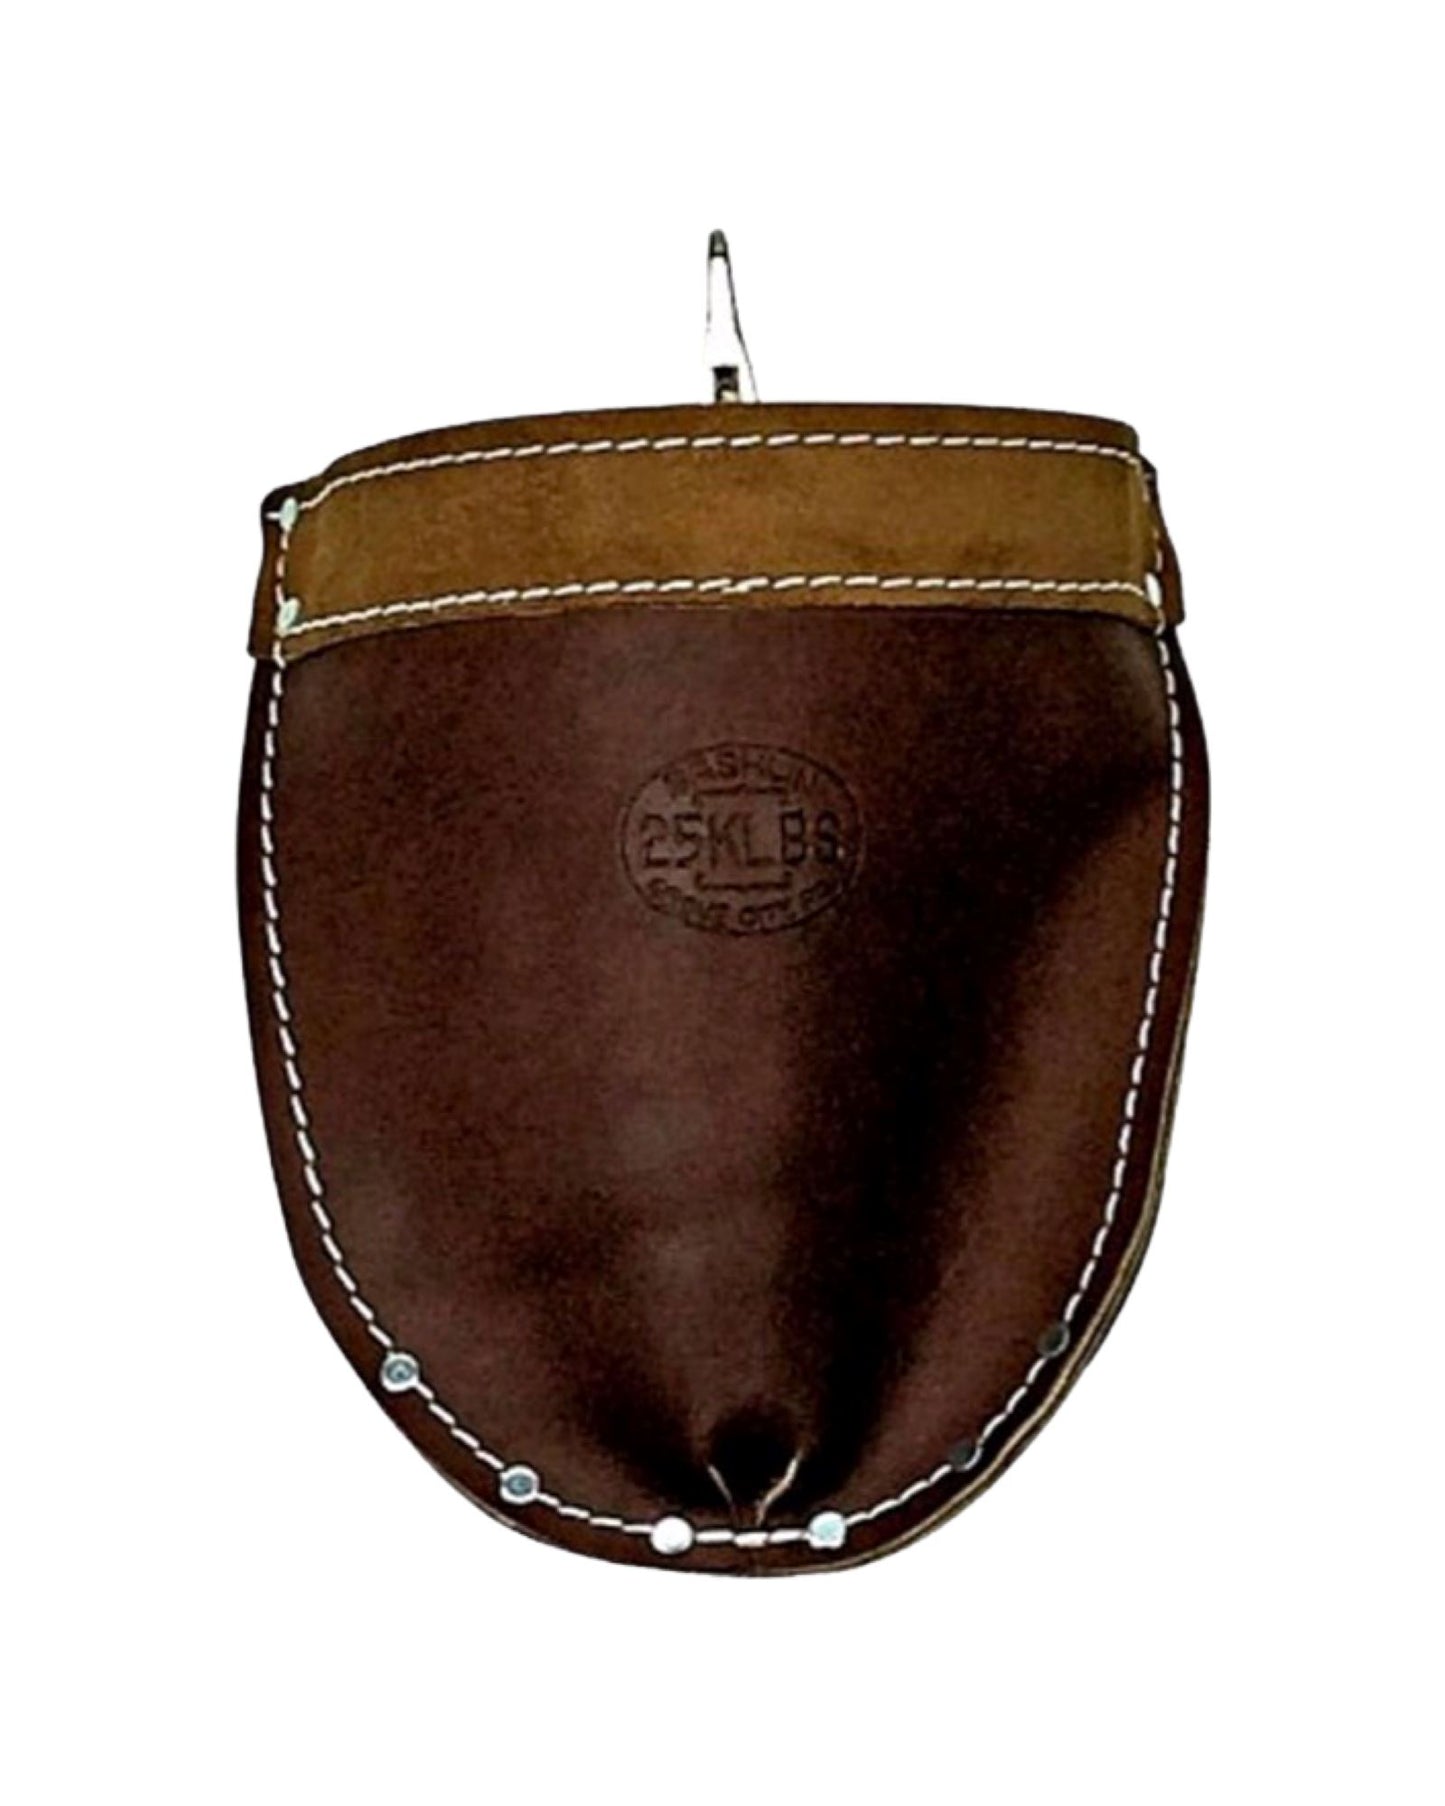 Bashlin Durable Leather Bolt and Nut Bag - 25KLBS Bags Bashlin 